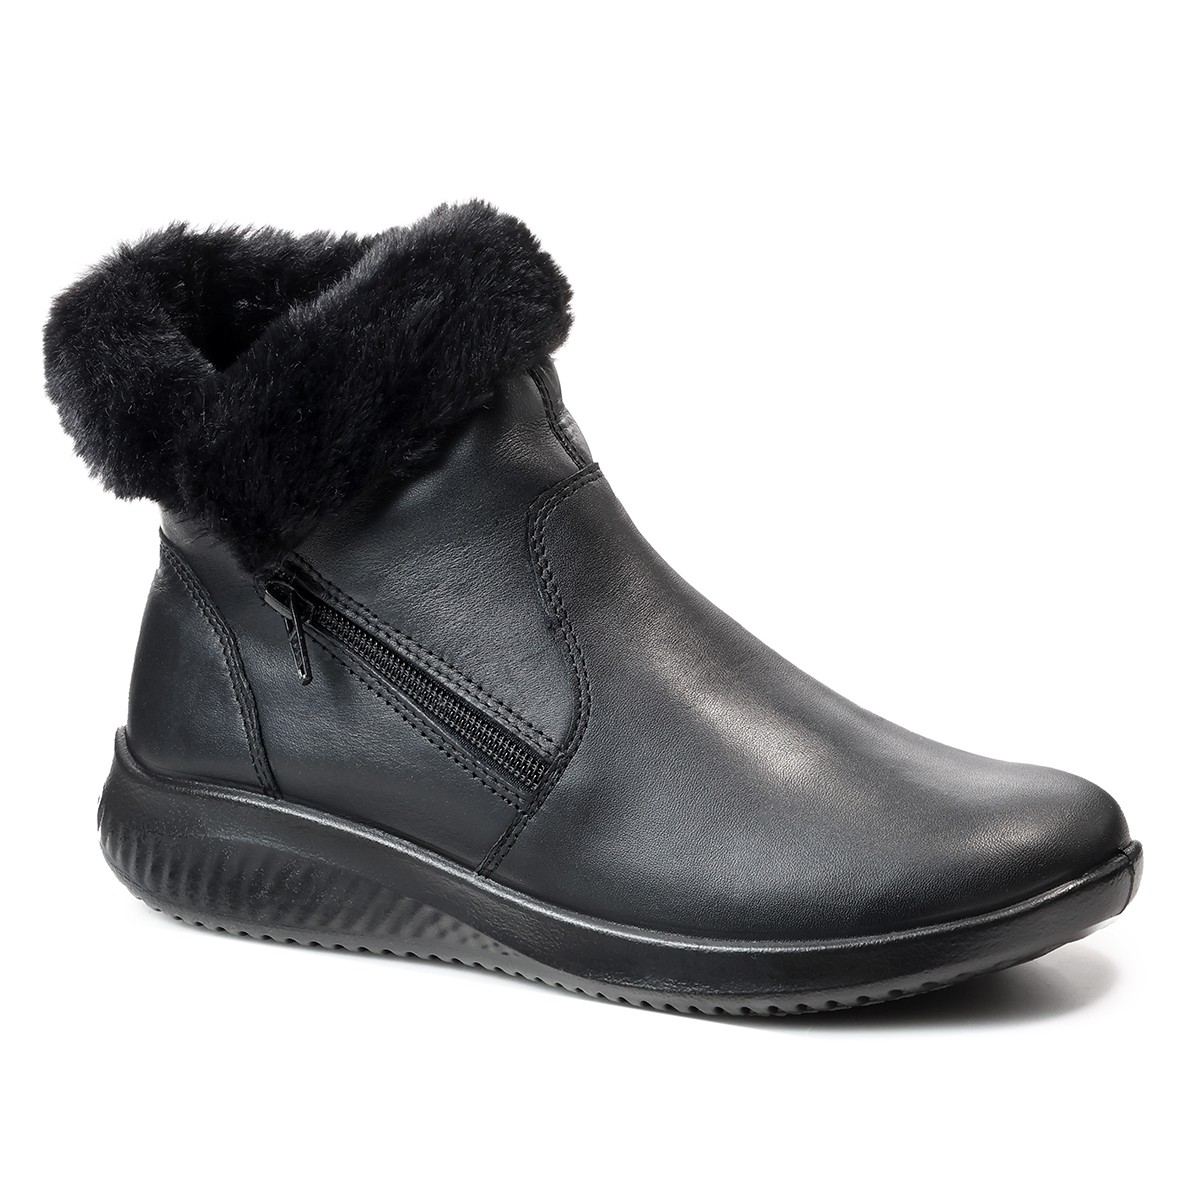 Женские ботинки D-Allegra 2020, Jomos, черные